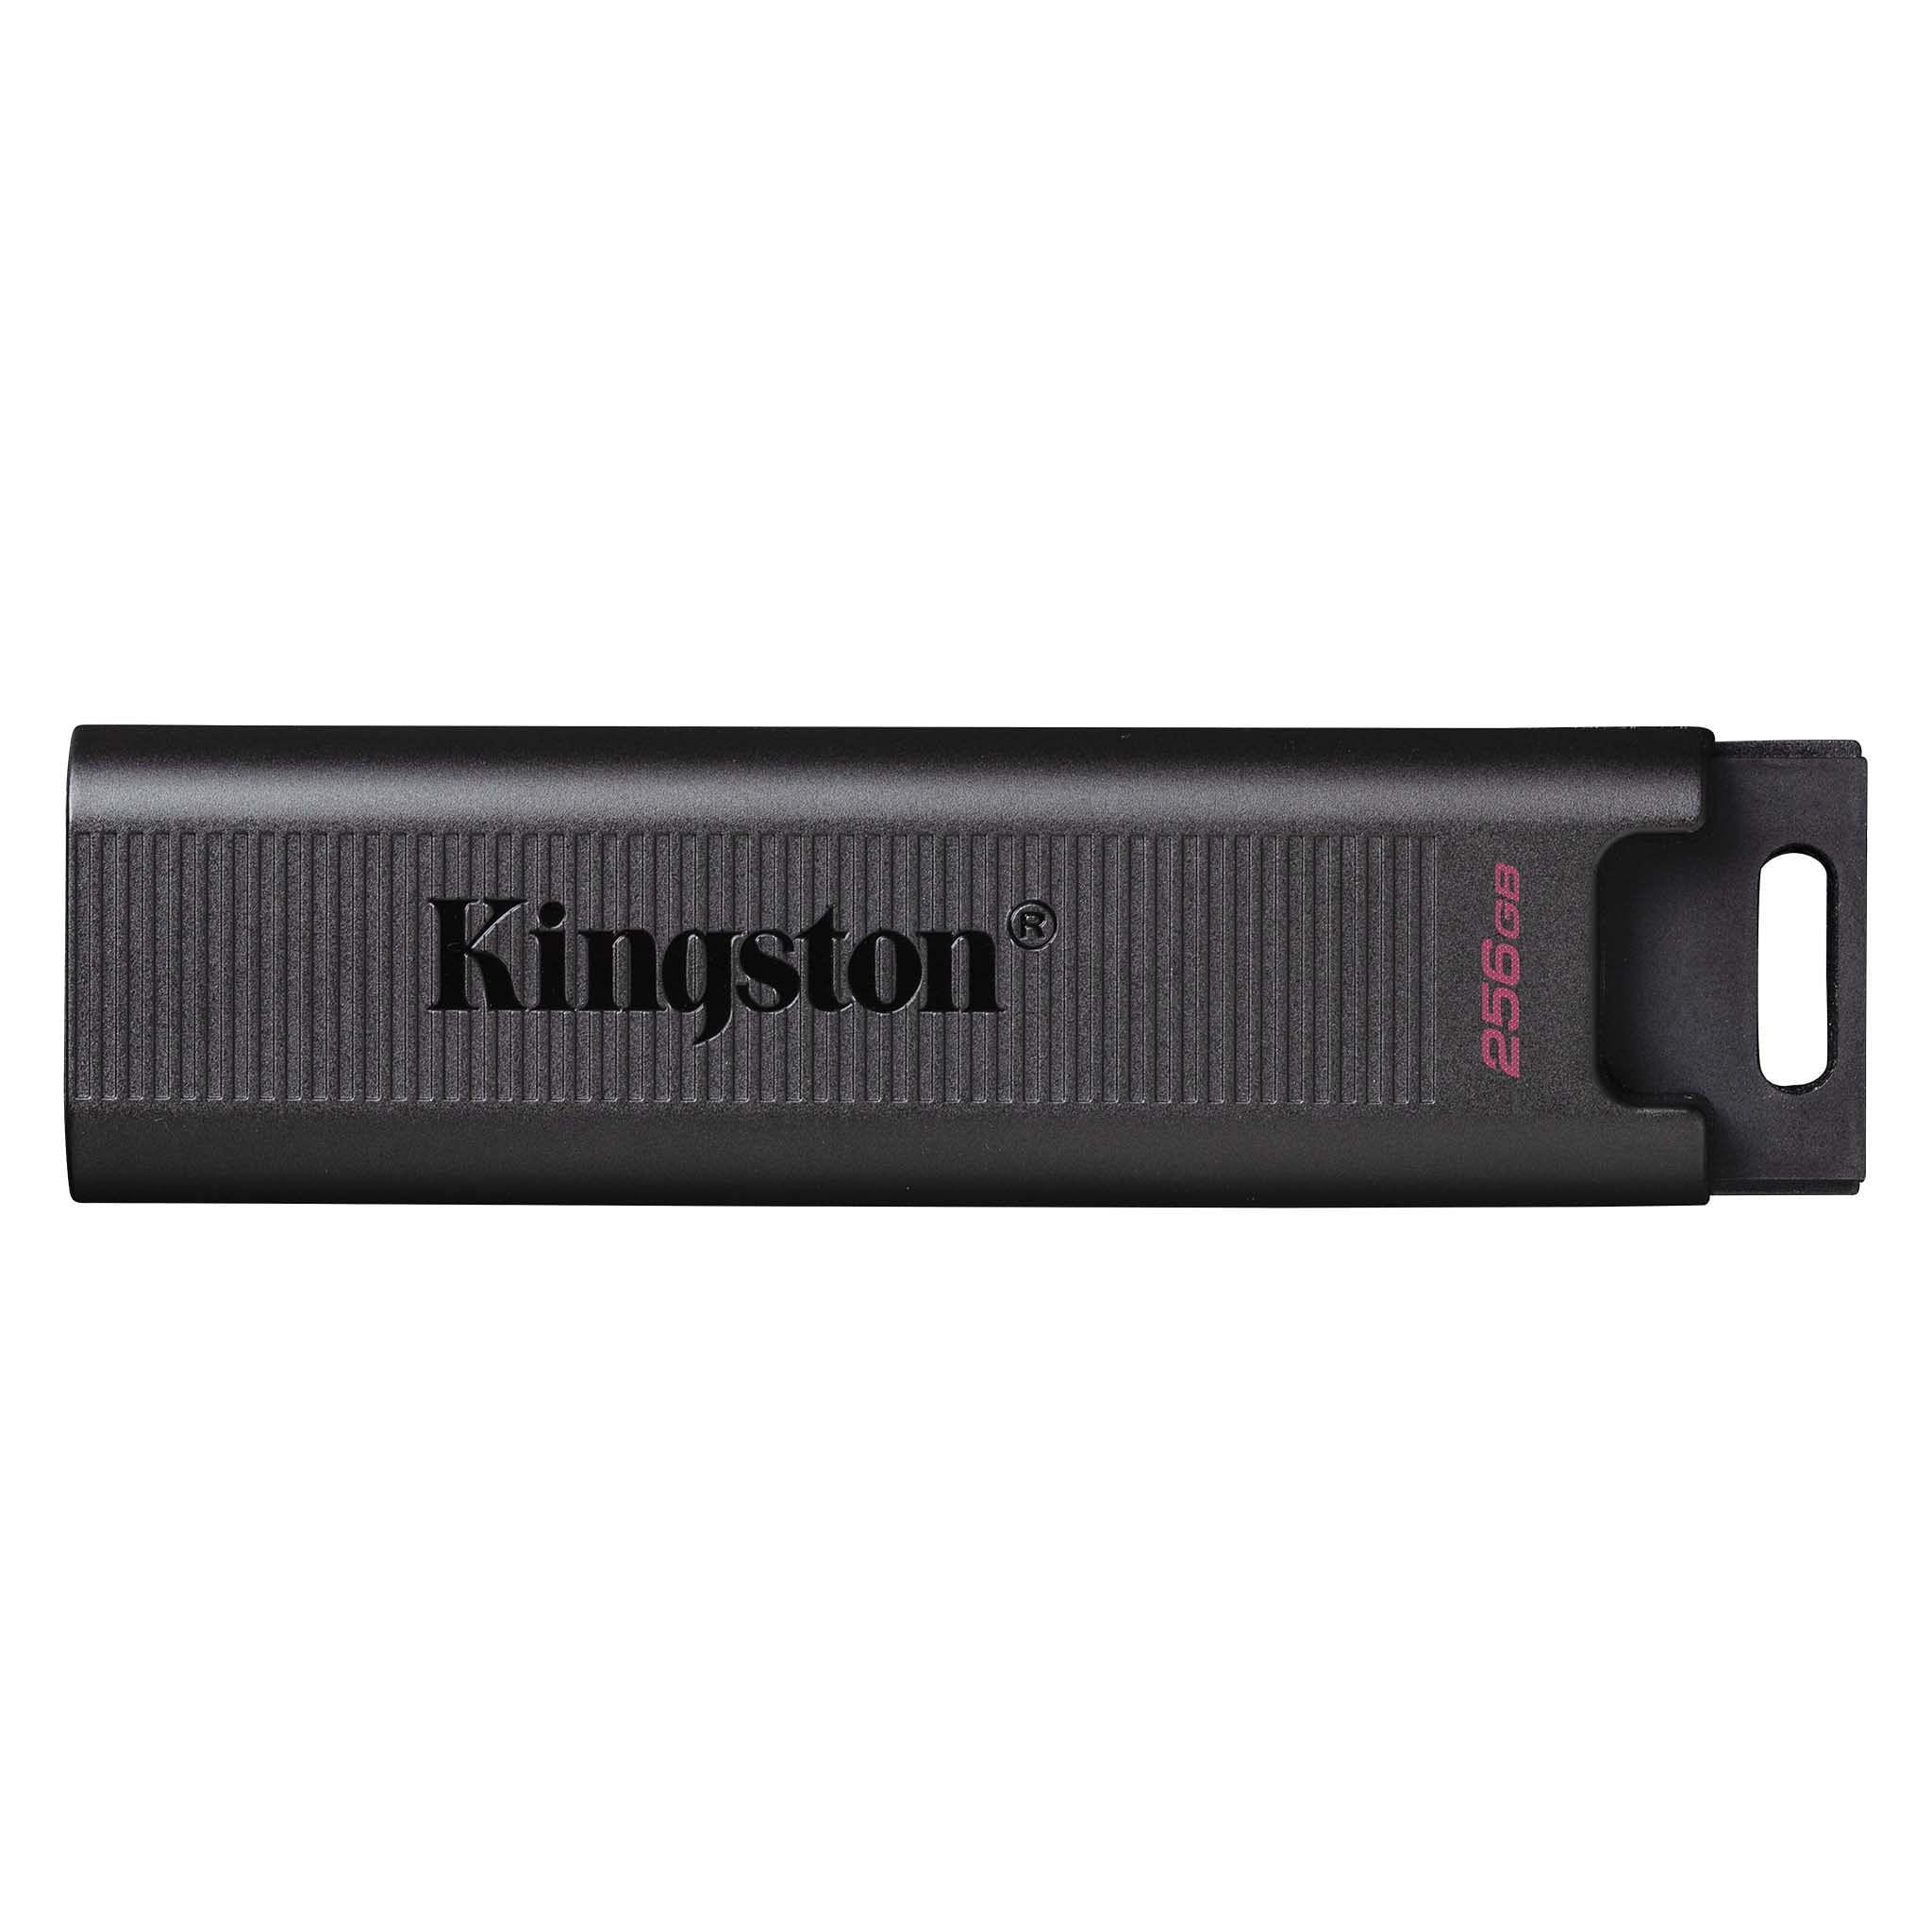 Kingston 256GB DT Max USB 3.2 Gen 2 Flash Drive [DTMAX/256GB]